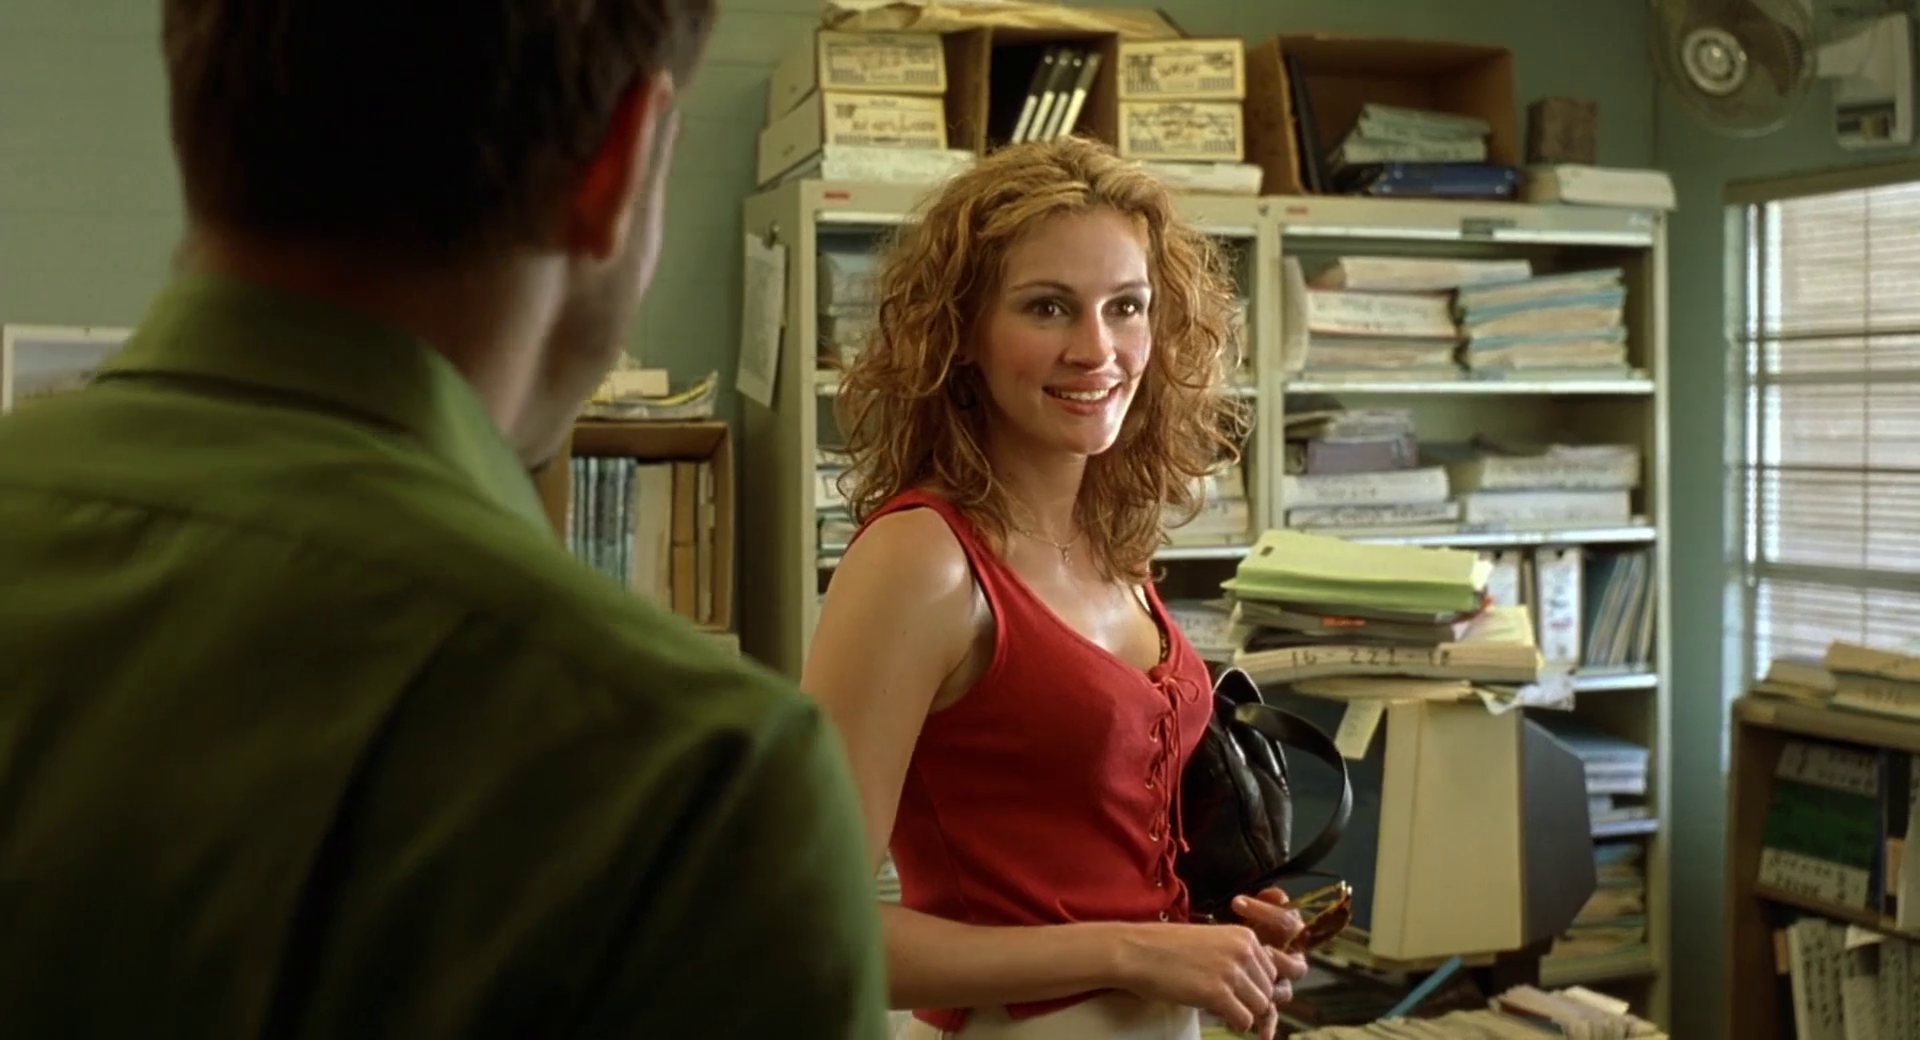 Migliori Biopic - 2000: "Erin Brockovich - Forte come la verità" ...